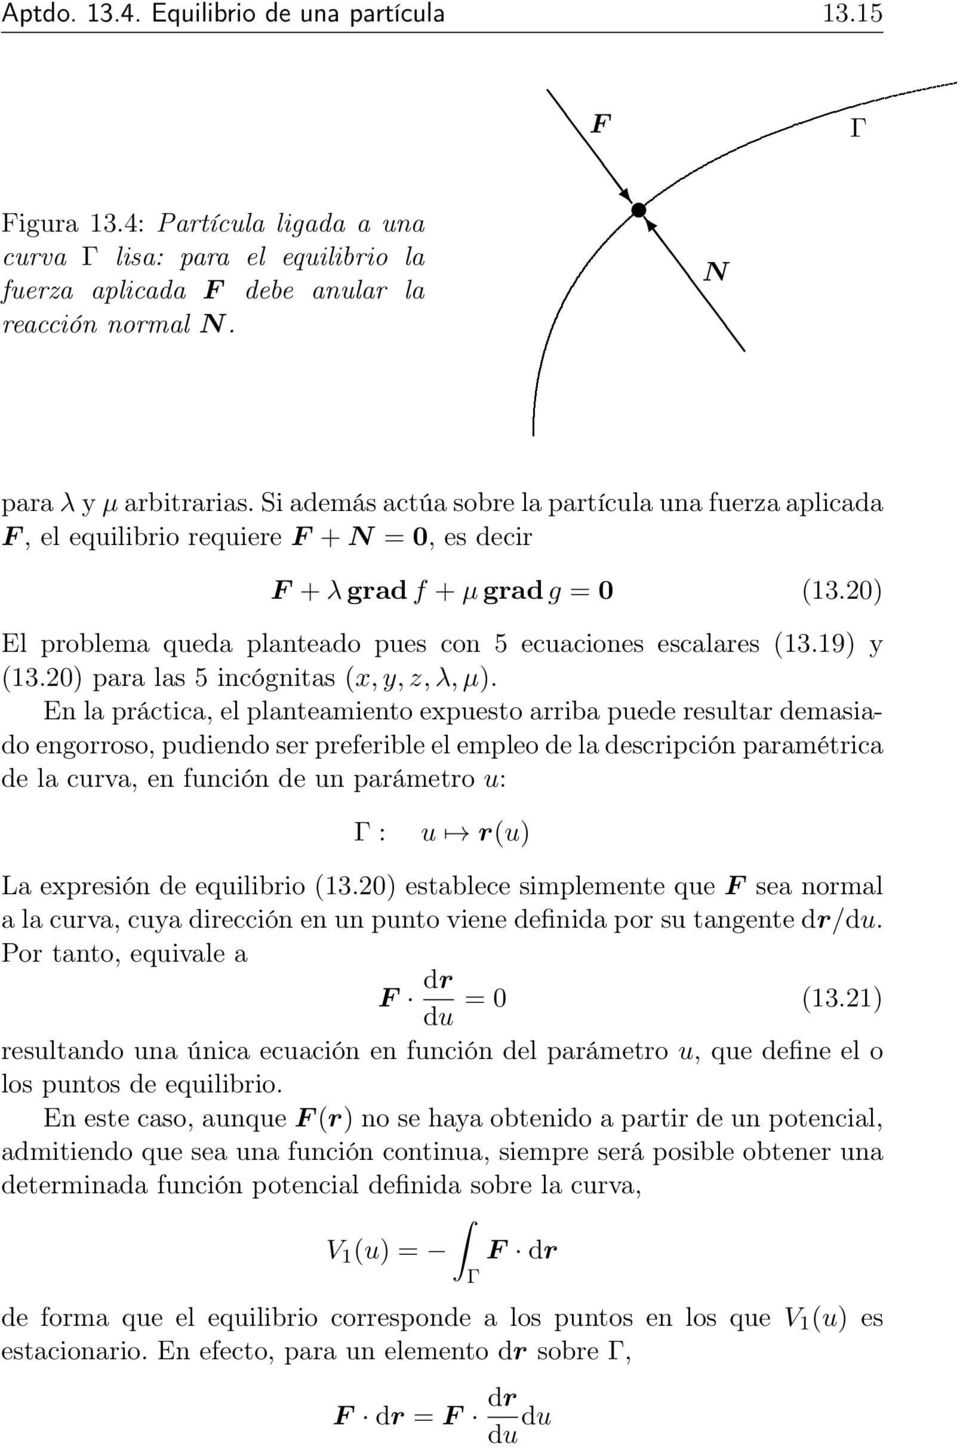 20) El problema queda planteado pues con 5 ecuaciones escalares (13.19) y (13.20) para las 5 incógnitas (x, y, z, λ, µ).